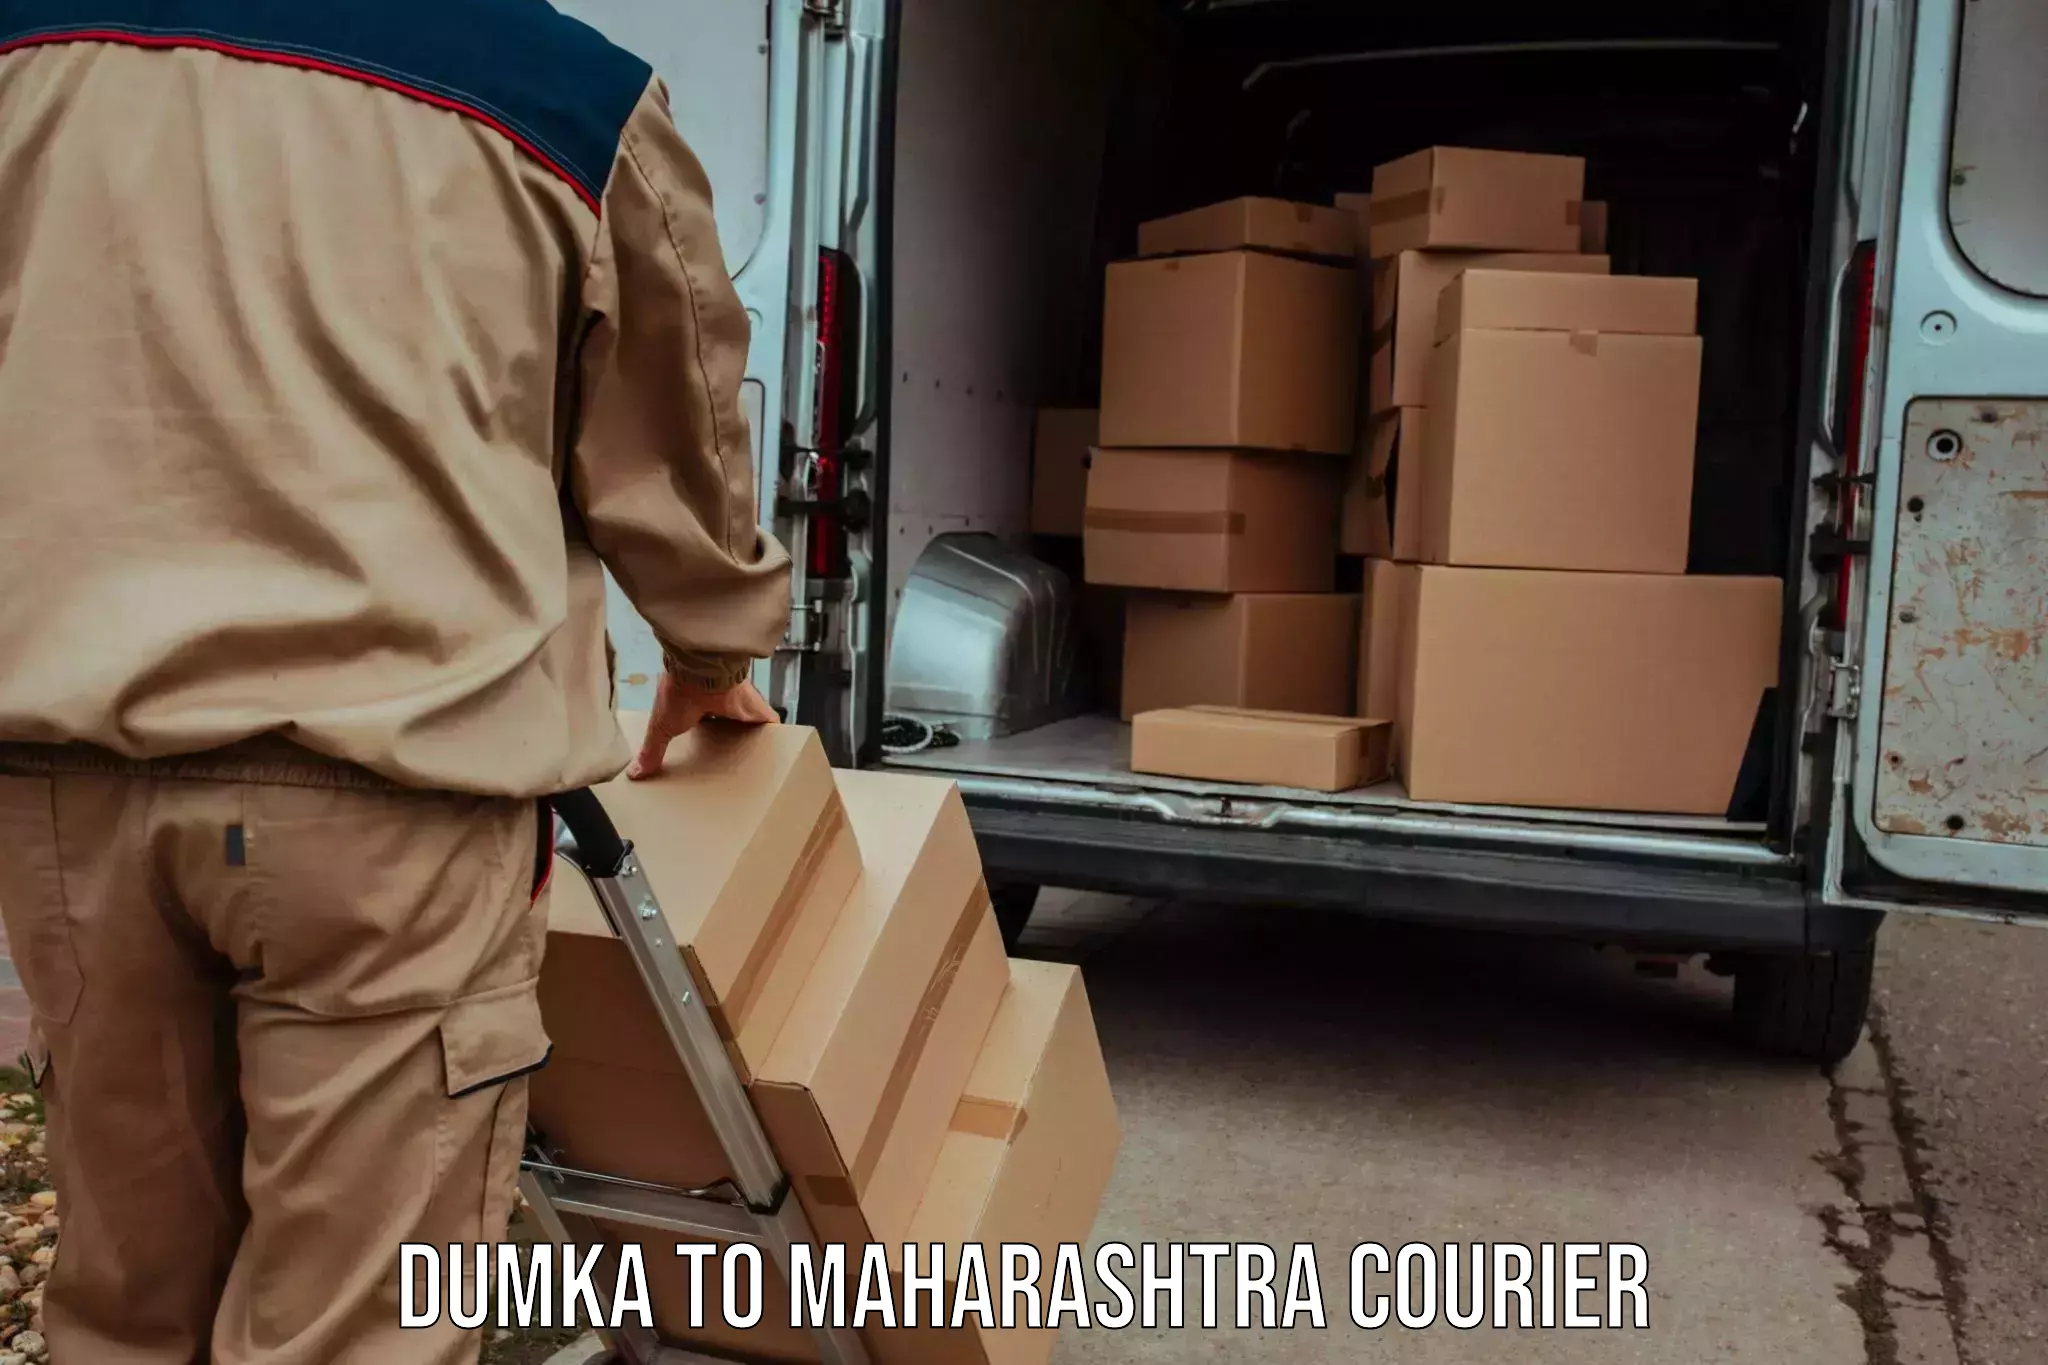 Express postal services Dumka to Amalner